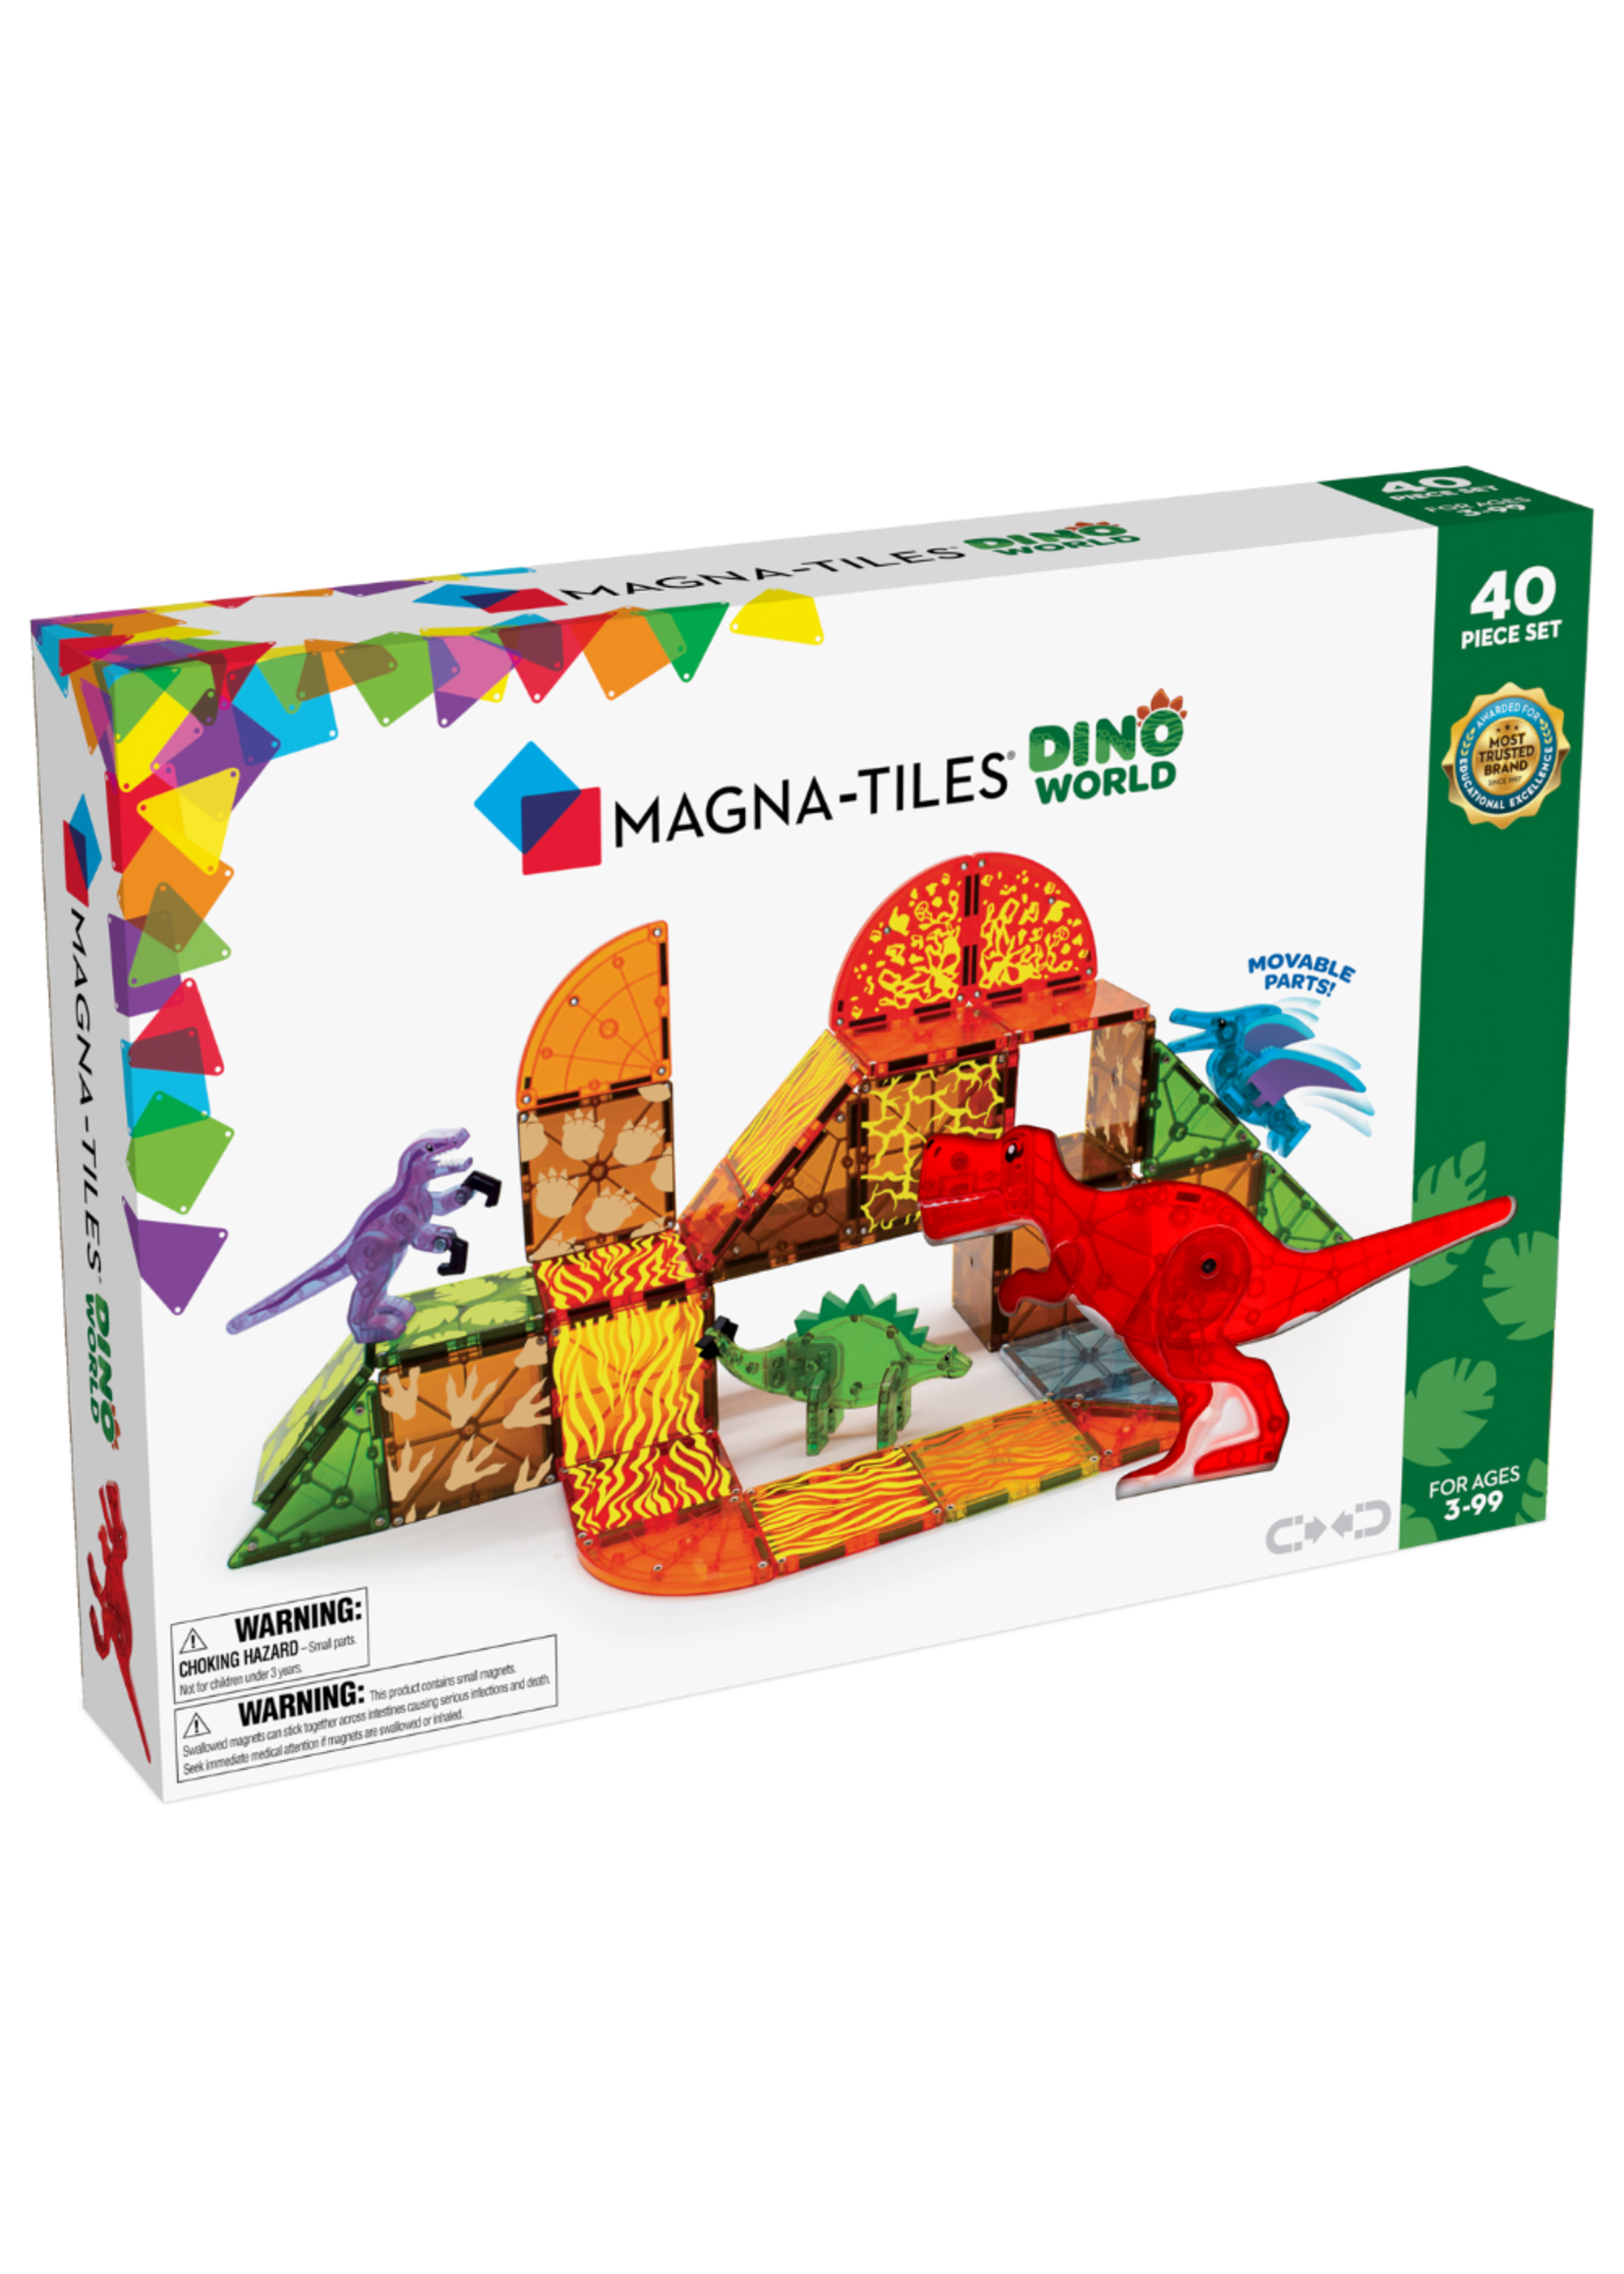 Magna-Tiles Magna Tiles Dino World 40 Piece Set